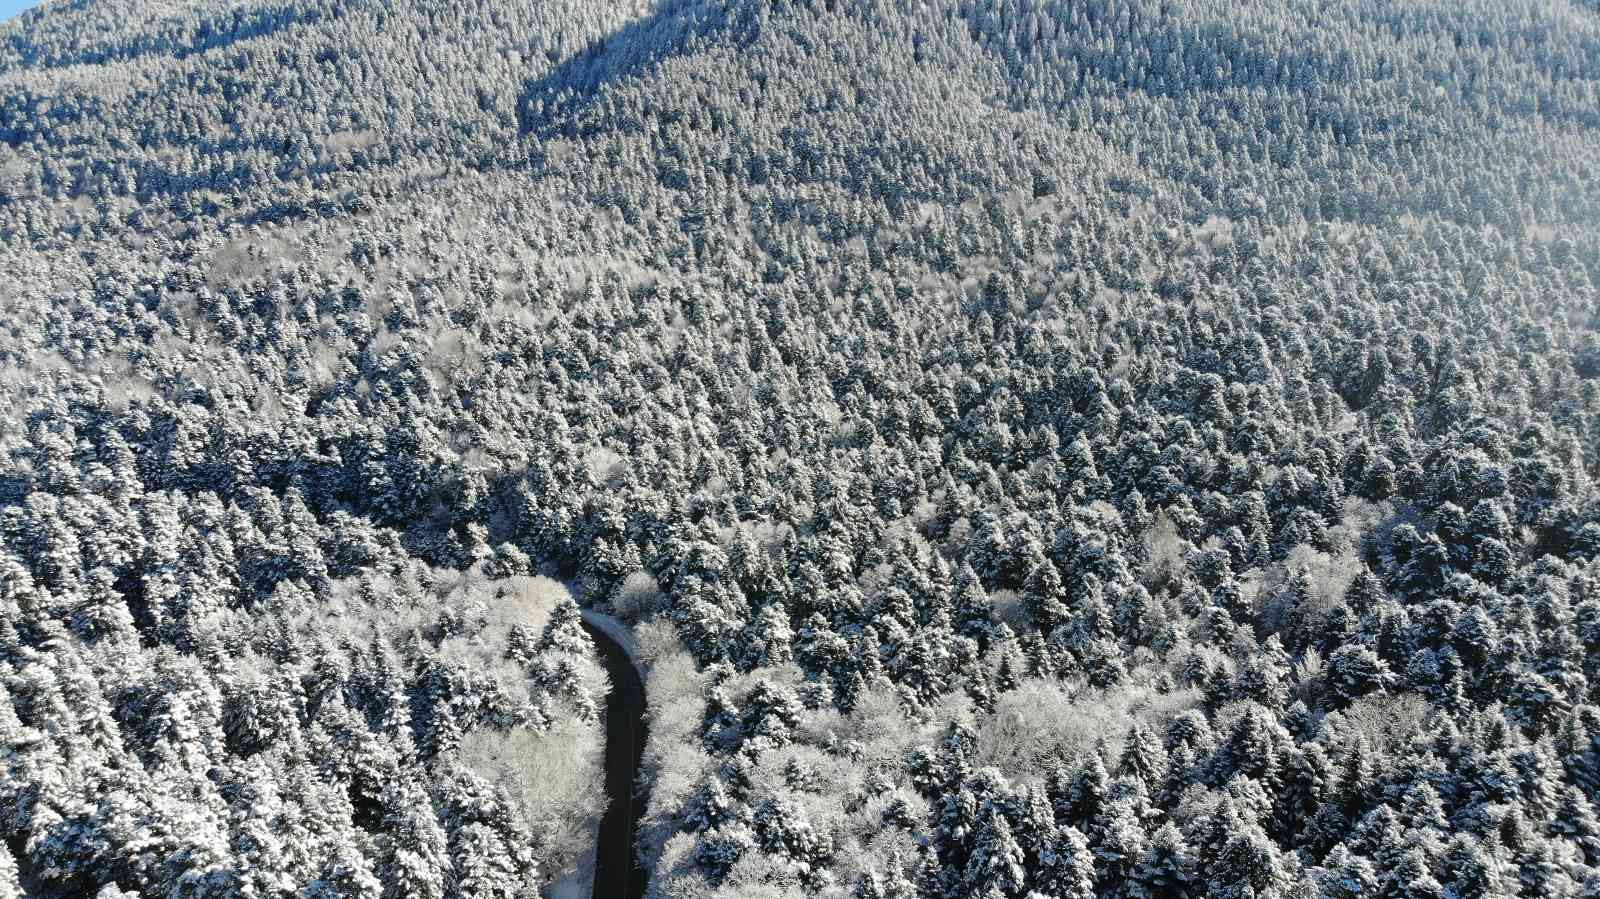 Bolu’nun karla kaplı ormanları havadan görüntülendi #bolu